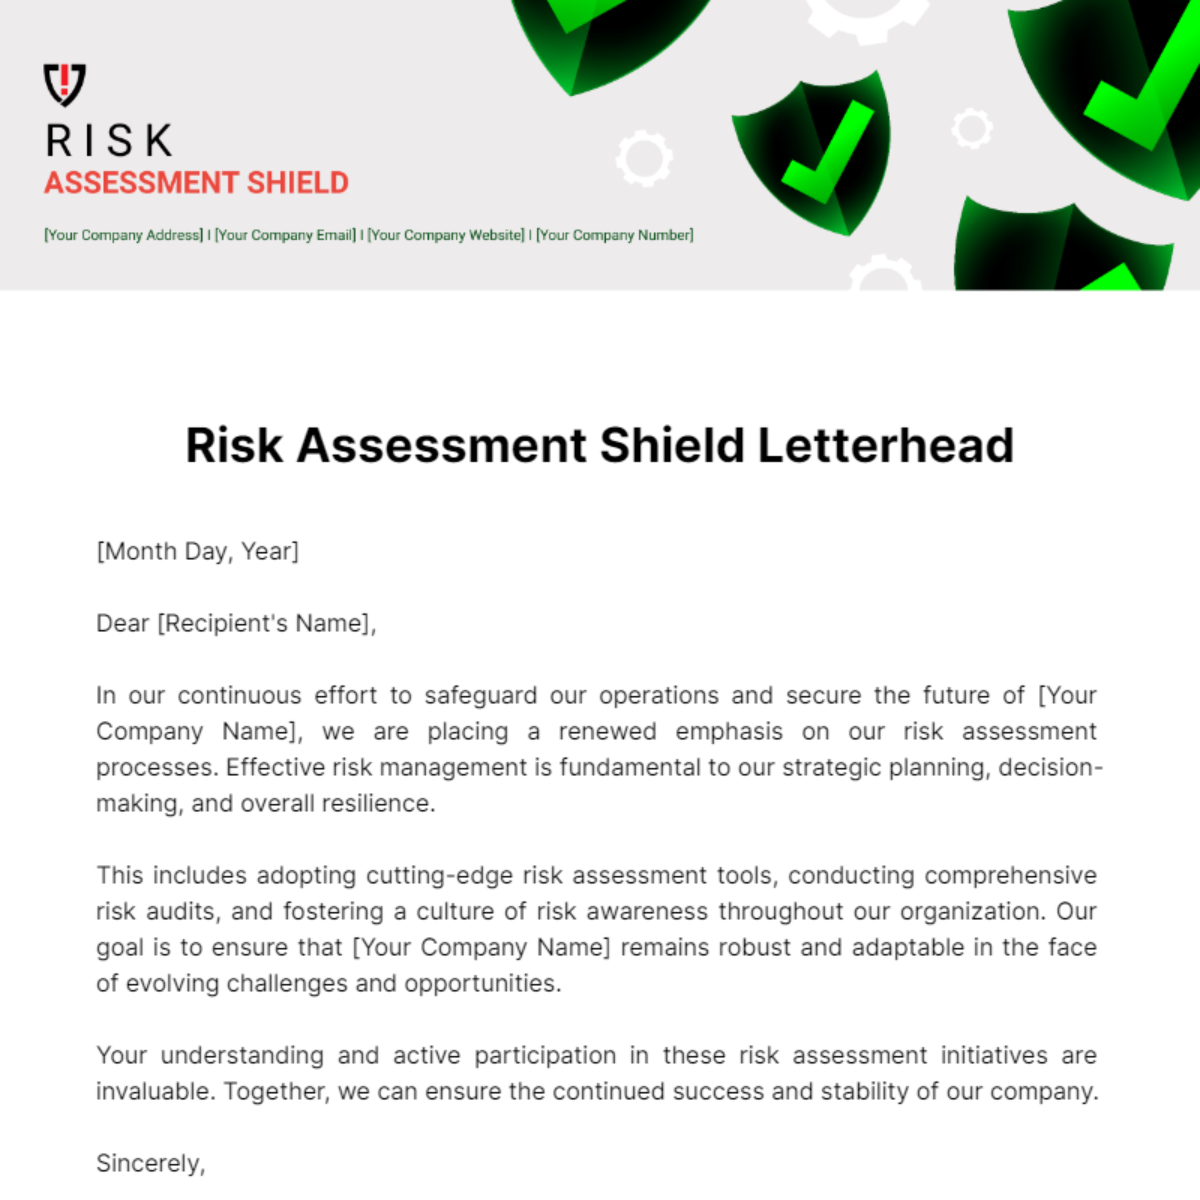 Free Risk Assessment Shield Letterhead Template